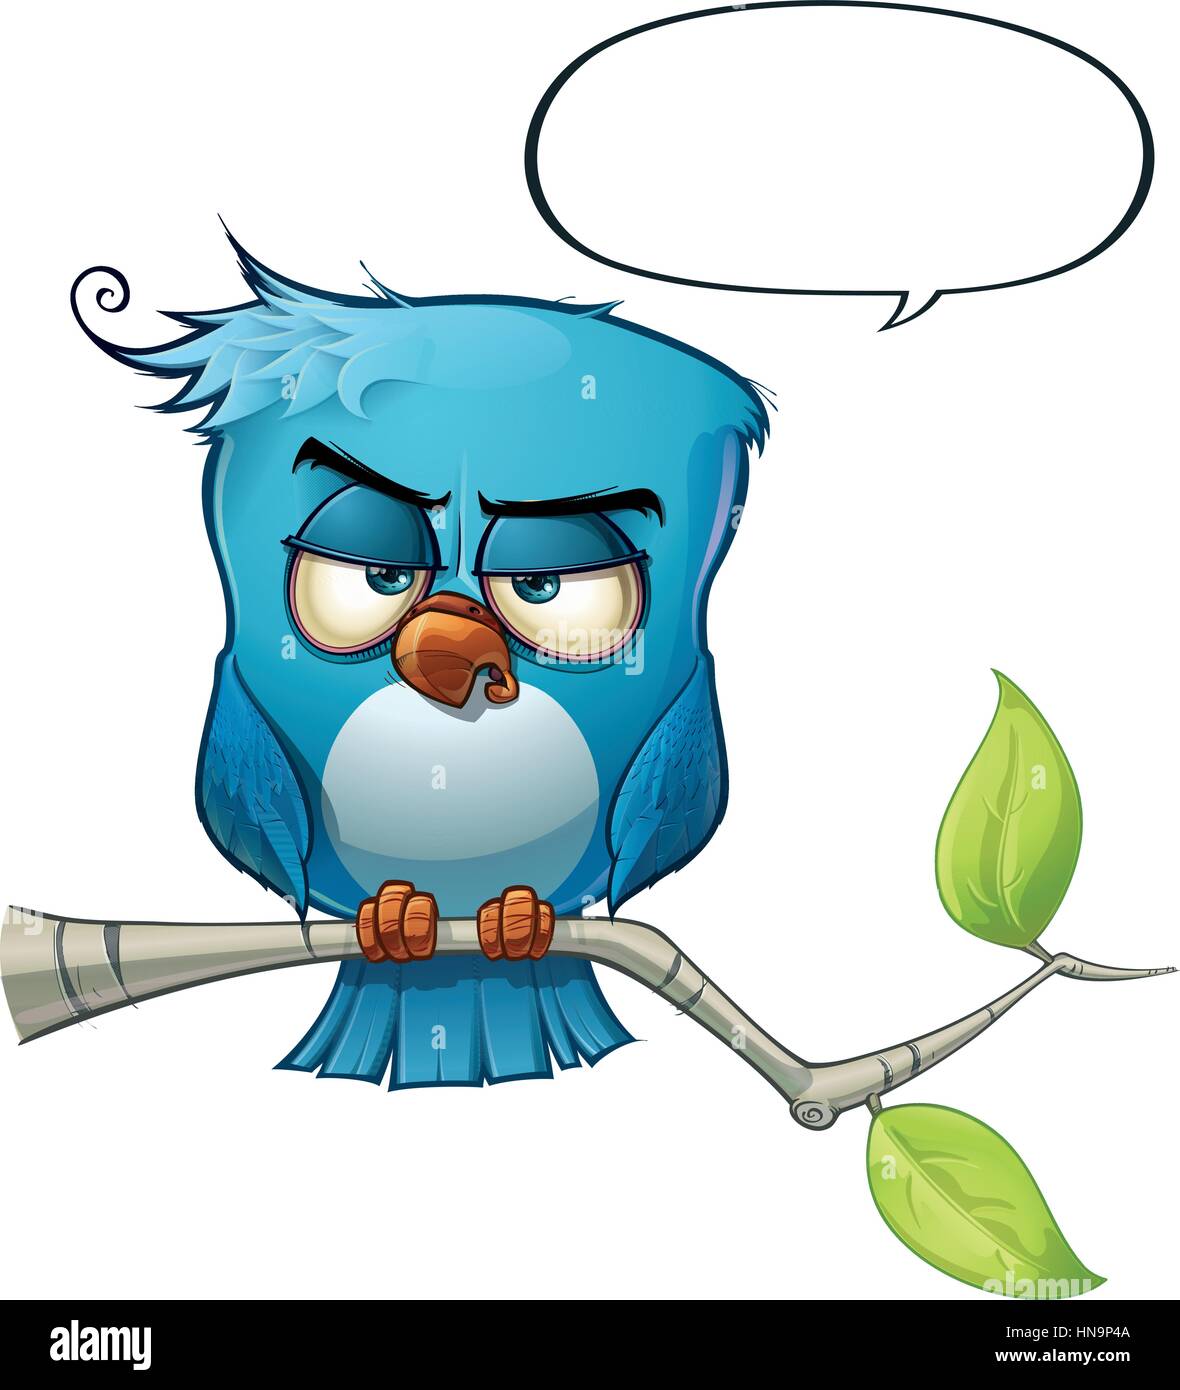 Ein blauer Vogel kommuniziert mit Stil Kommentare oder Meinungen in der Welt! Stock Vektor